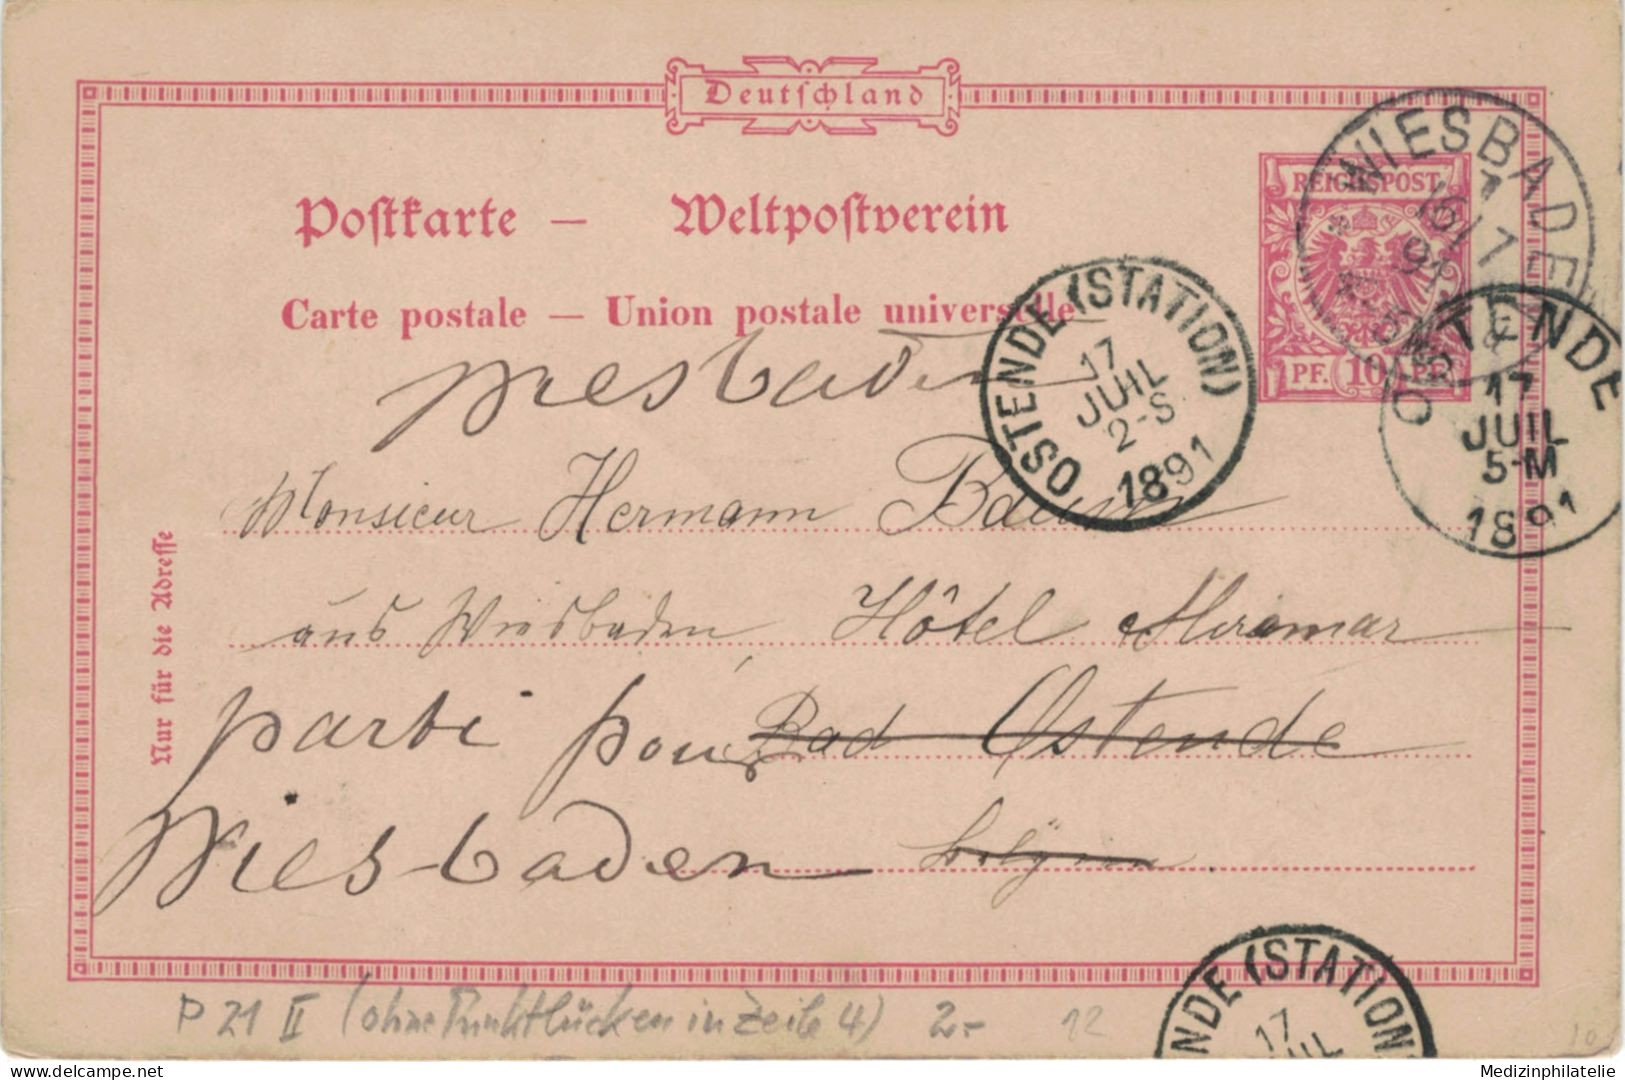 Ganzsache 10 Pfennig - Wiesbaden 1891 > Ostende Station, - Cartes Postales